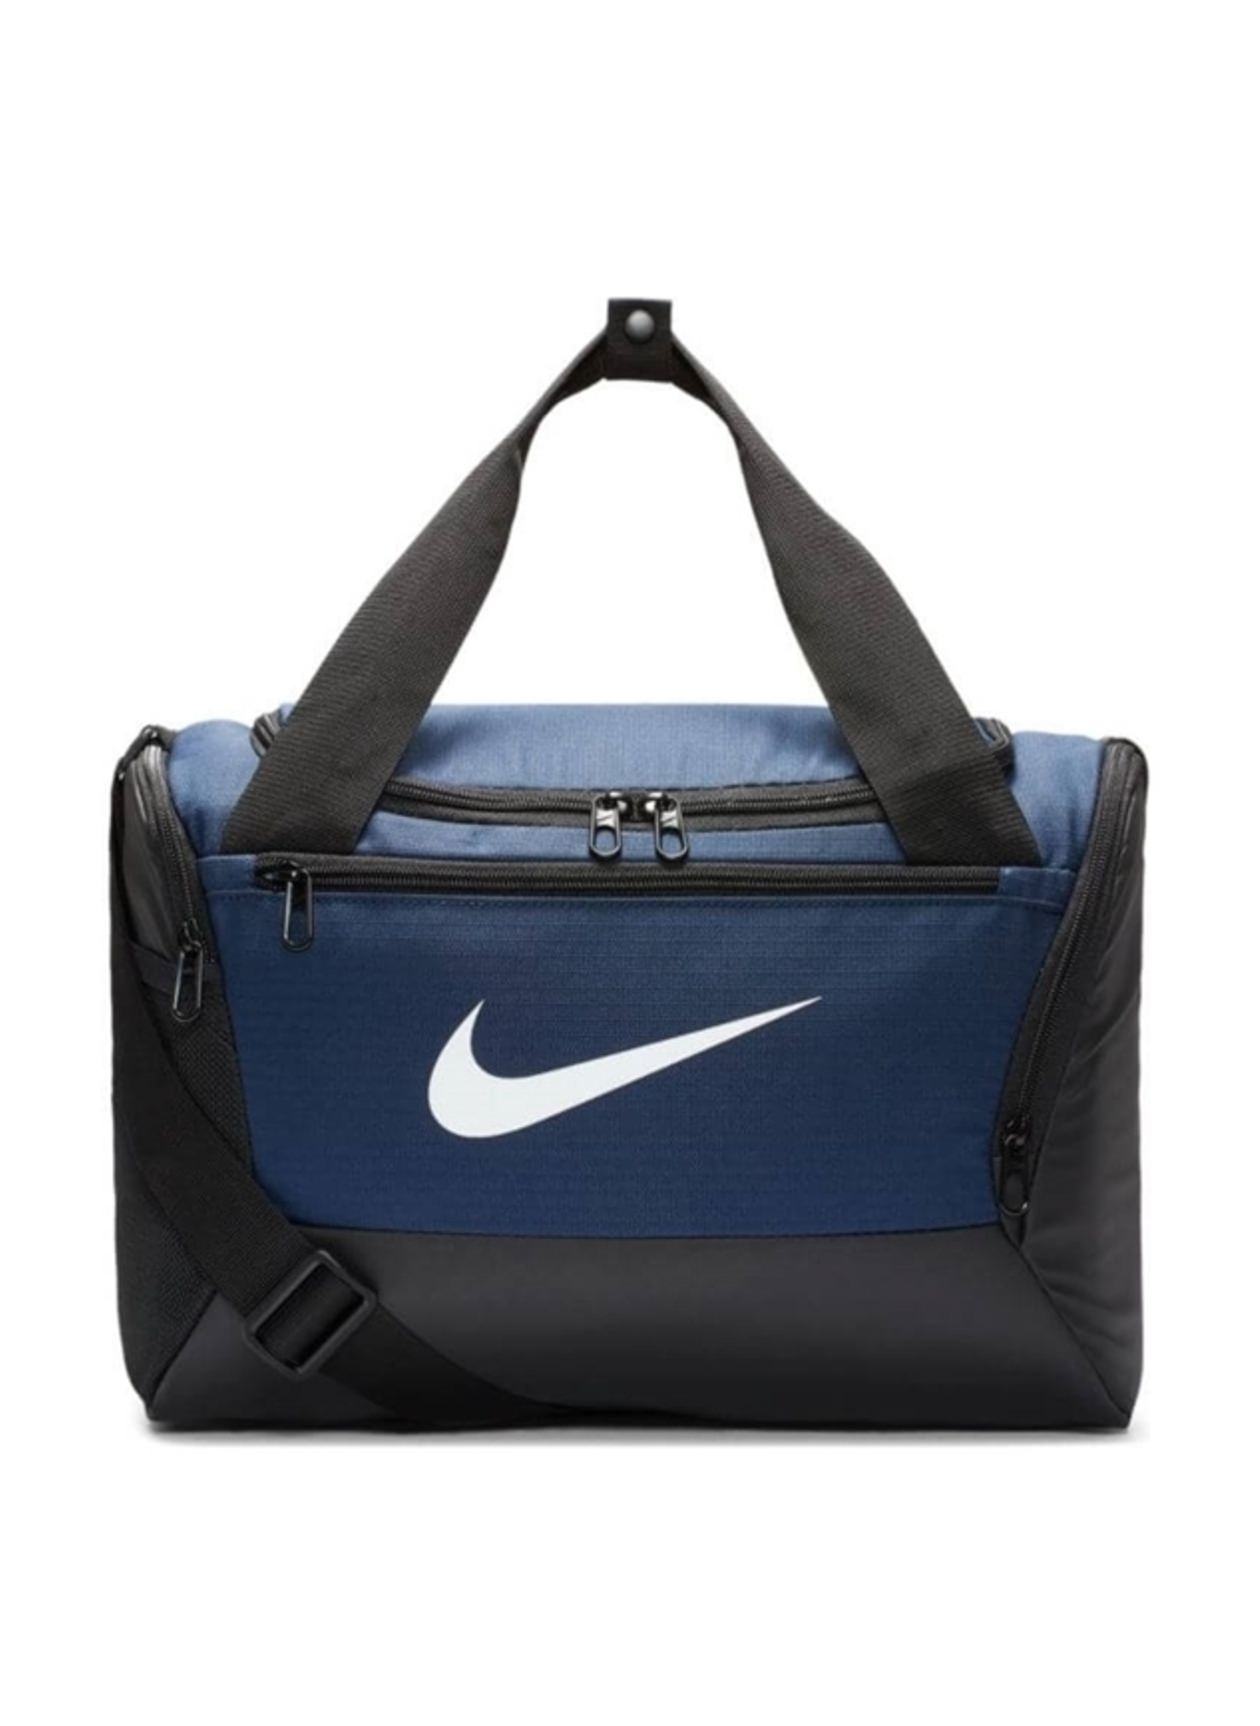 Nike Brasilia Extra Small Training Duffel Bag Midnight Navy